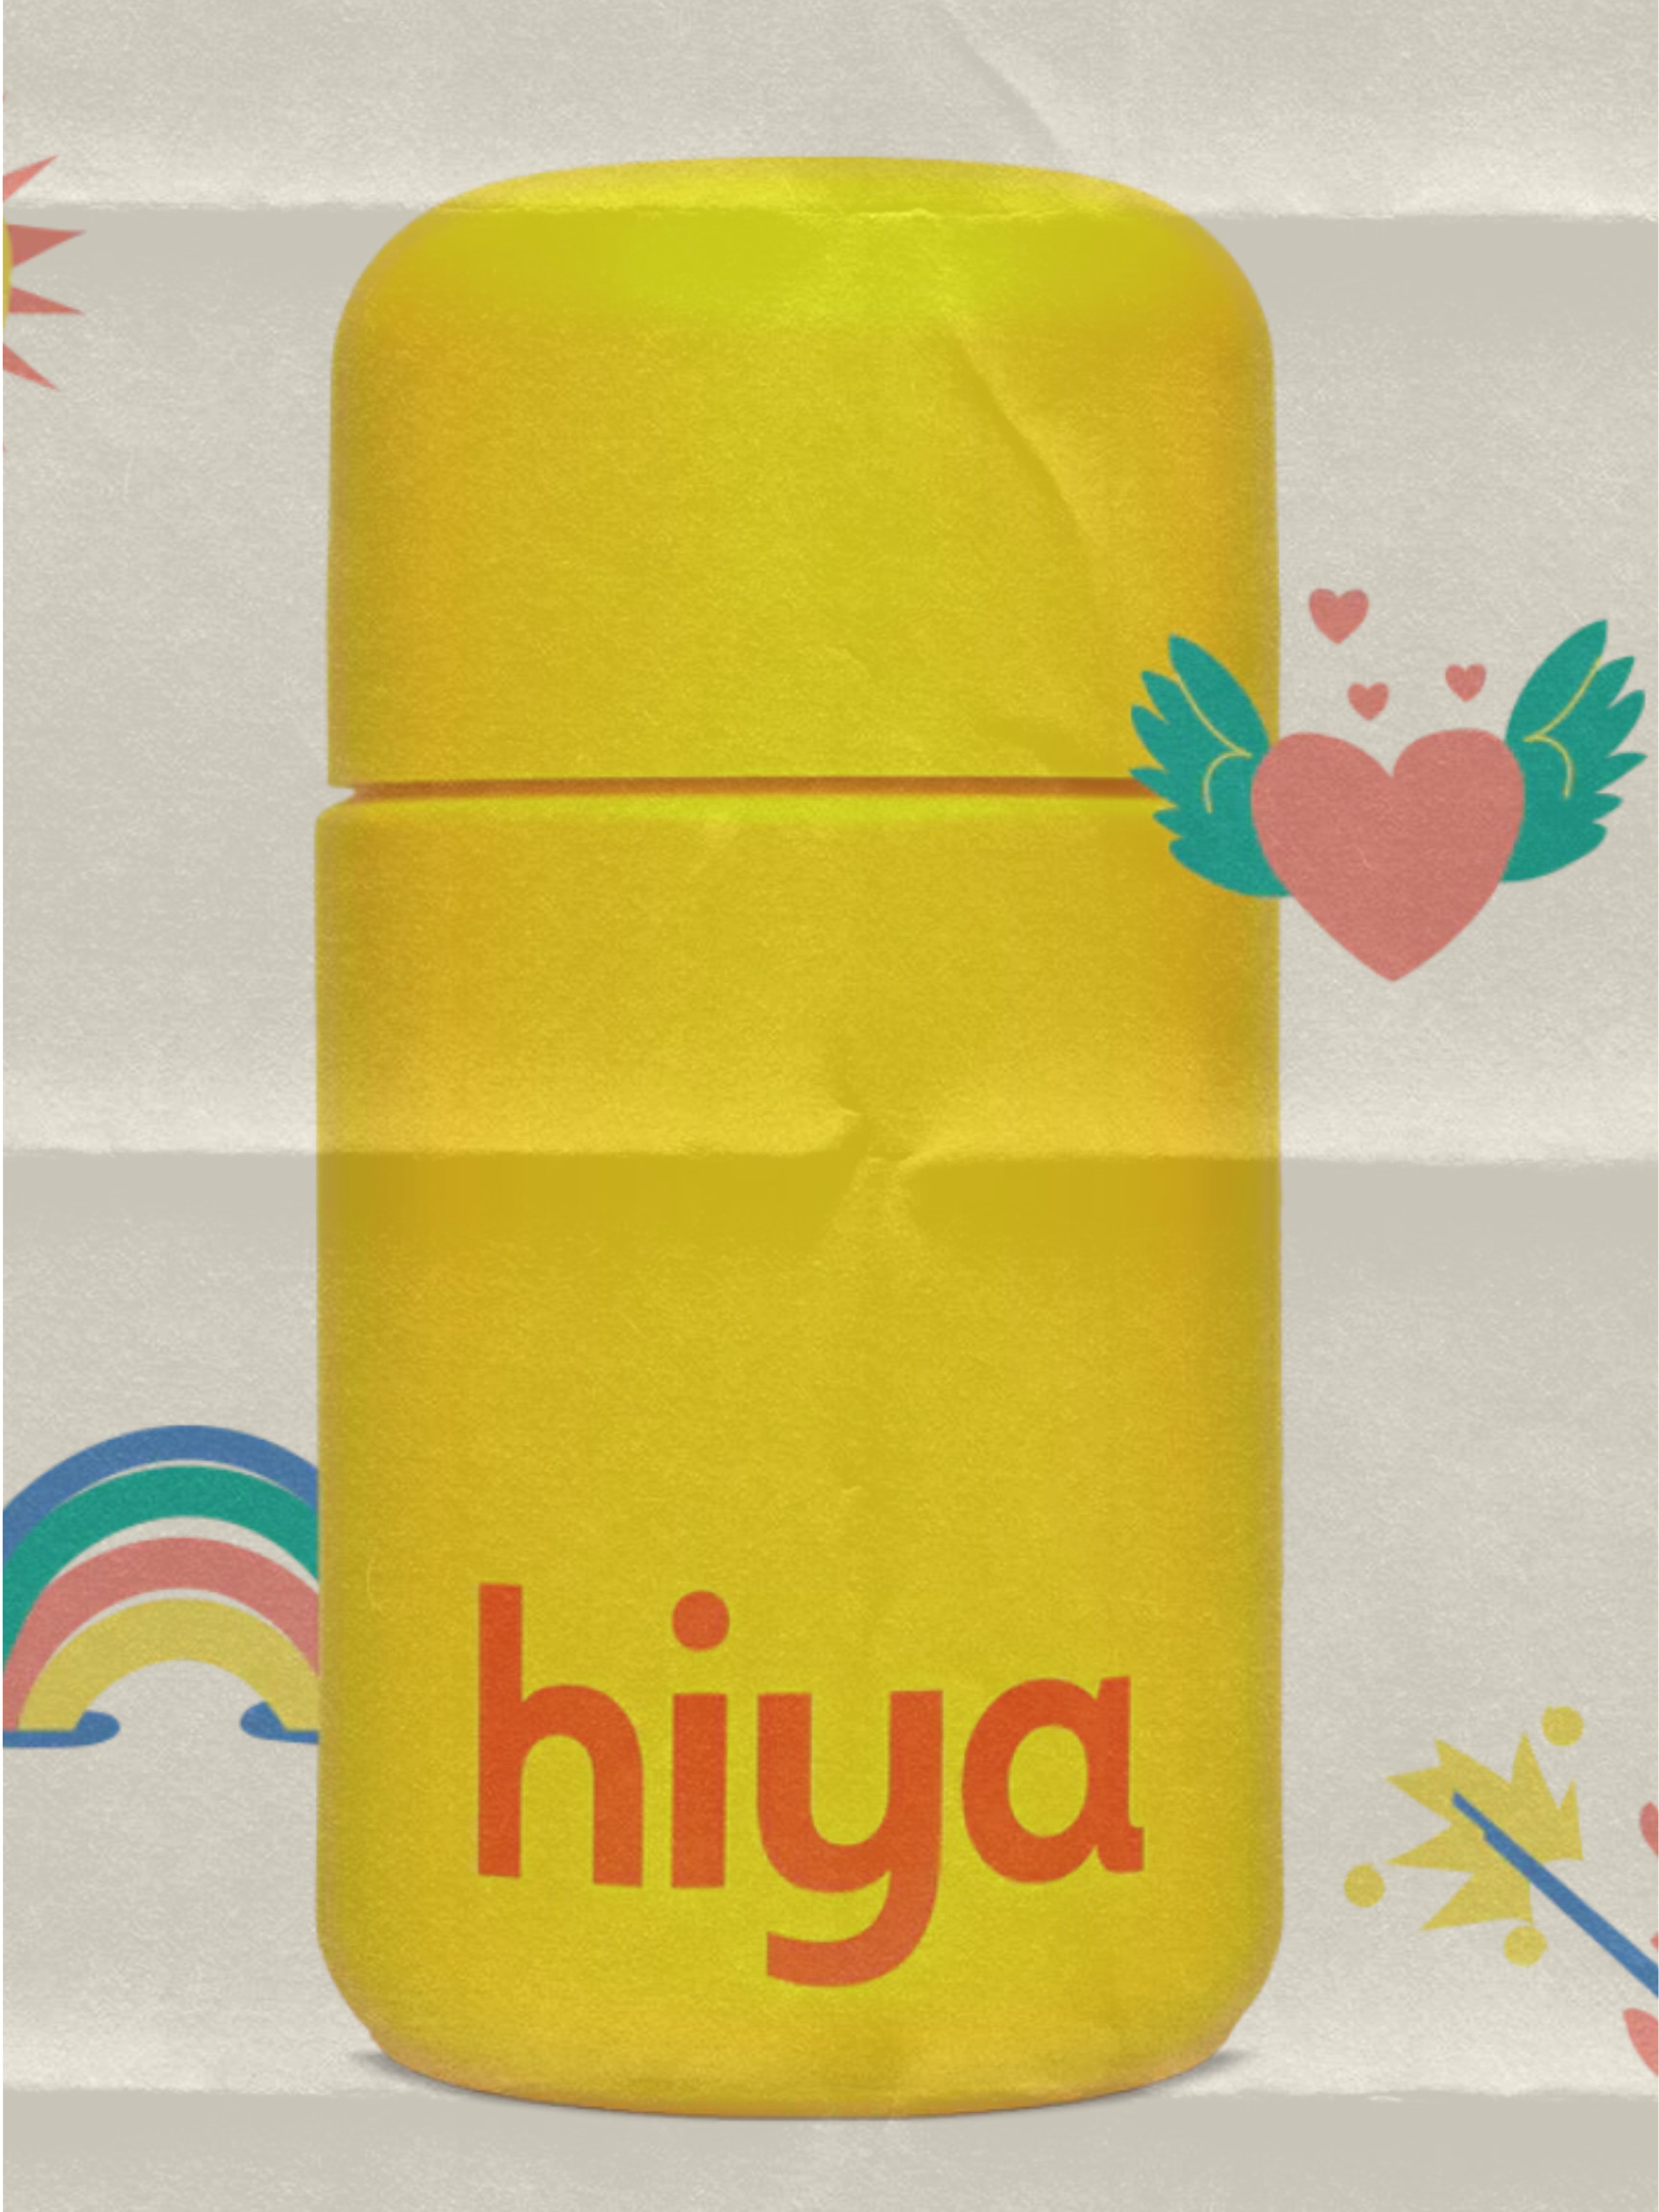 Hiya Kids Vitamin Review | The Hive